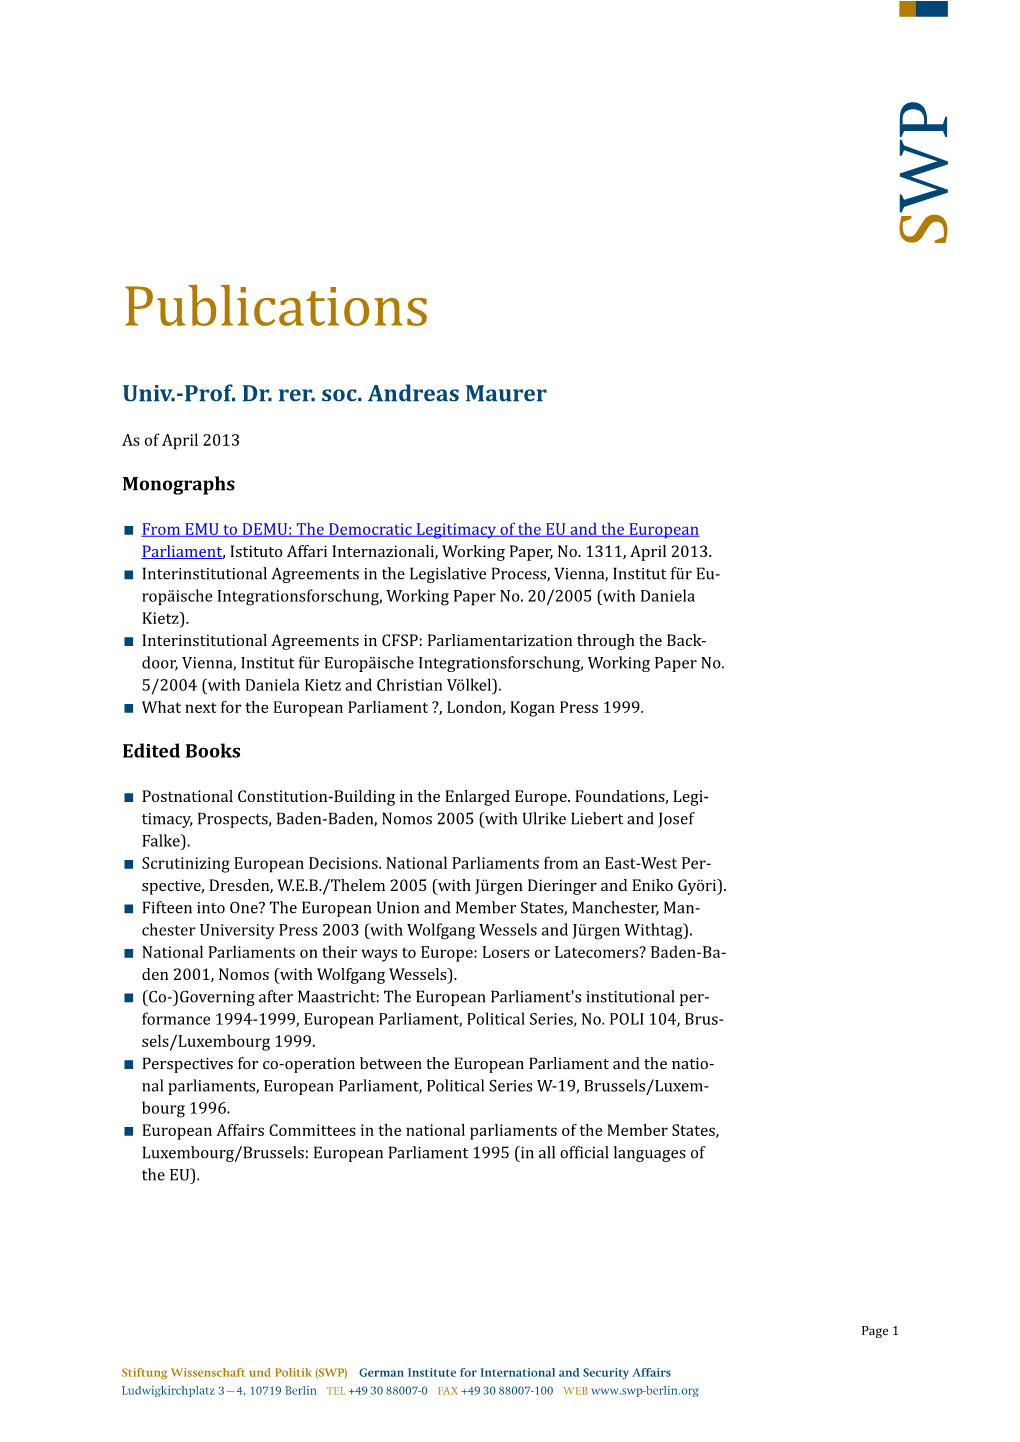 Publications (PDF)